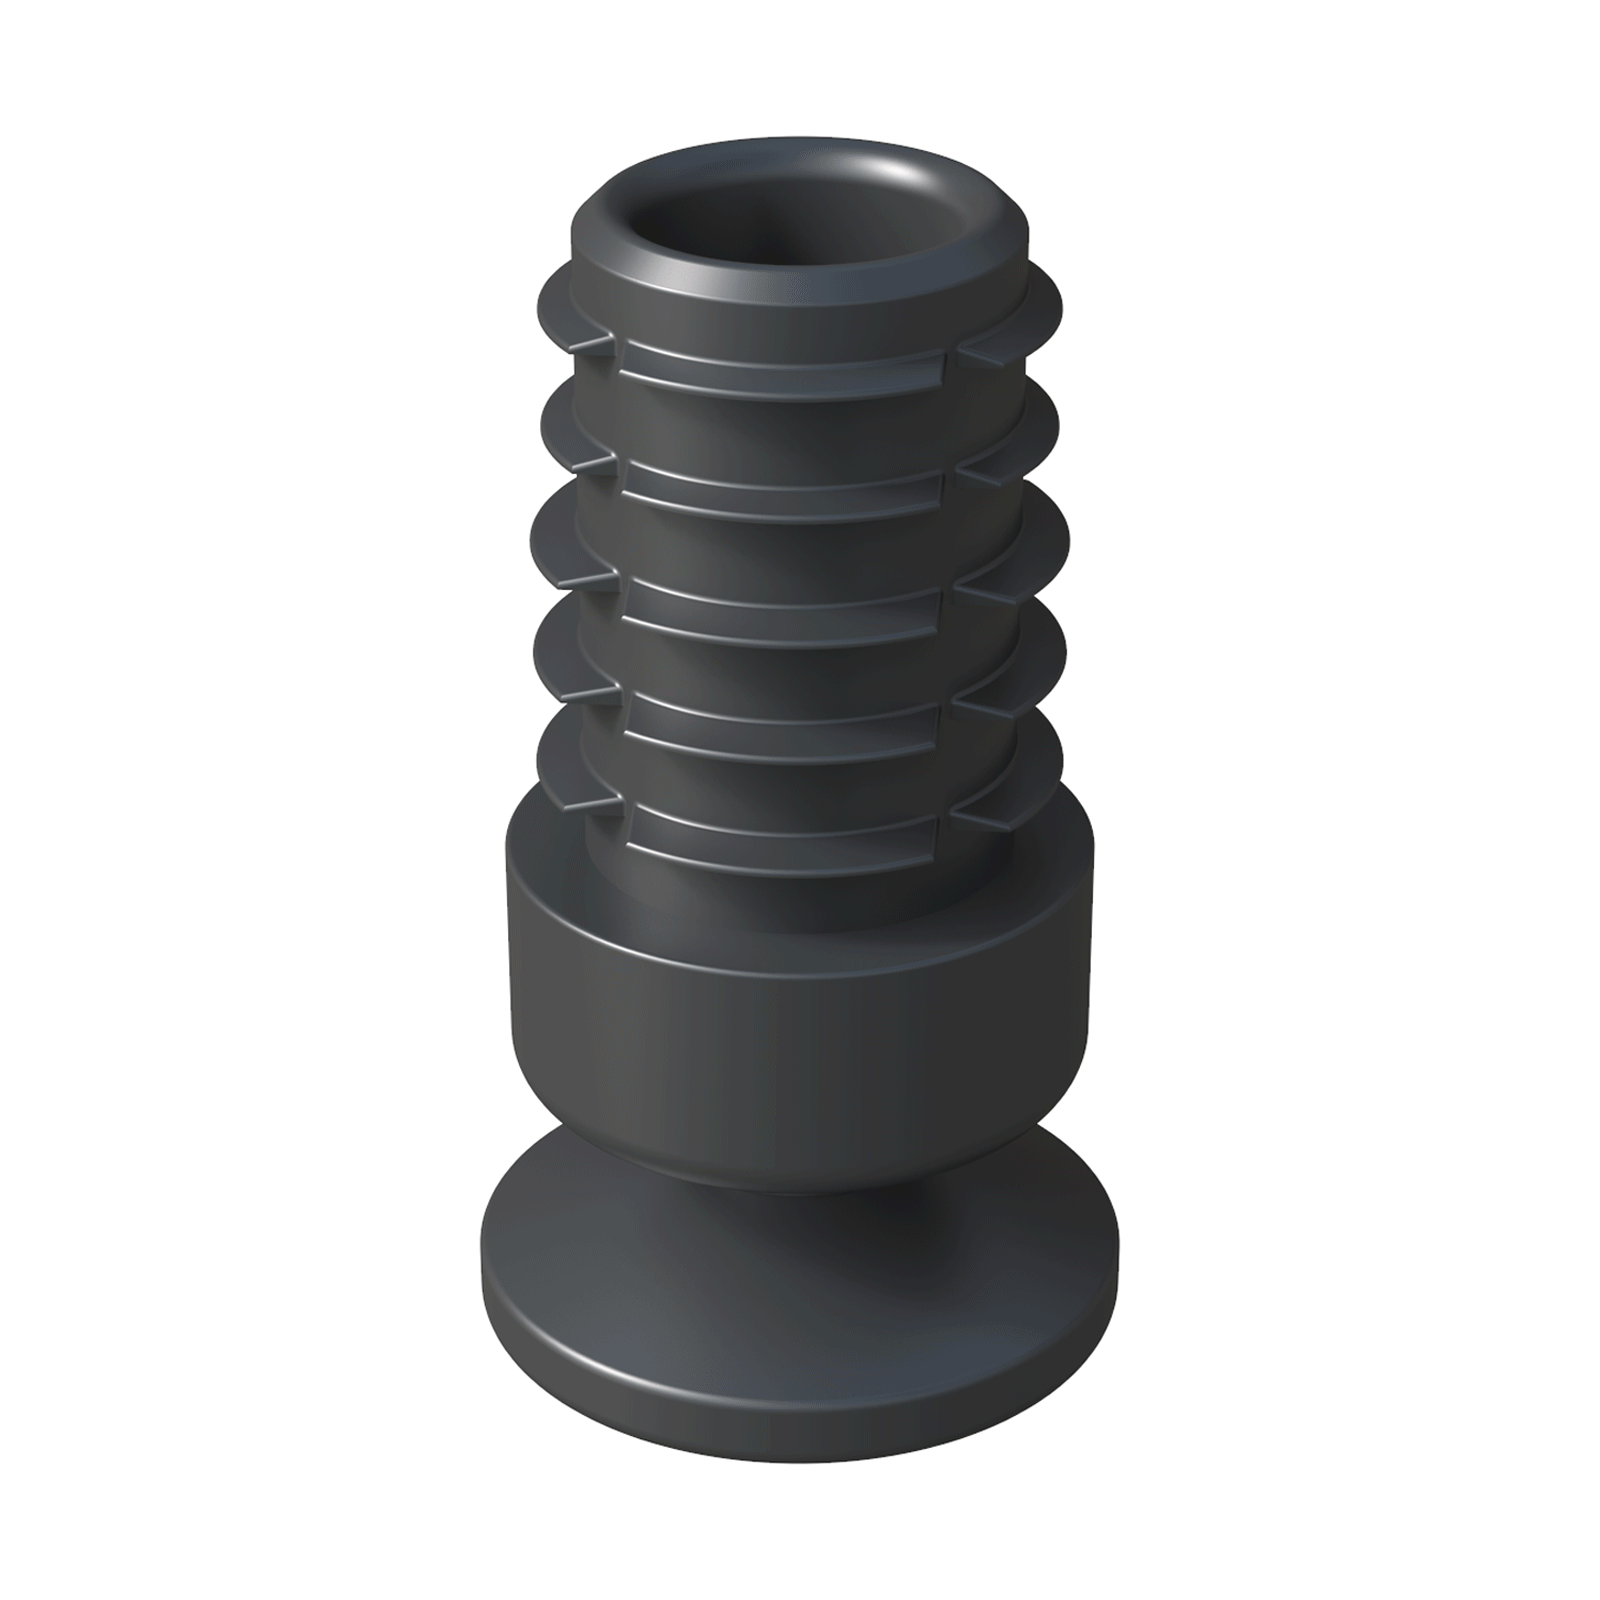 Nos embouts pour tubes ronds sont inclinables grâce à leur design et leur angle va jusqu´à 25º.